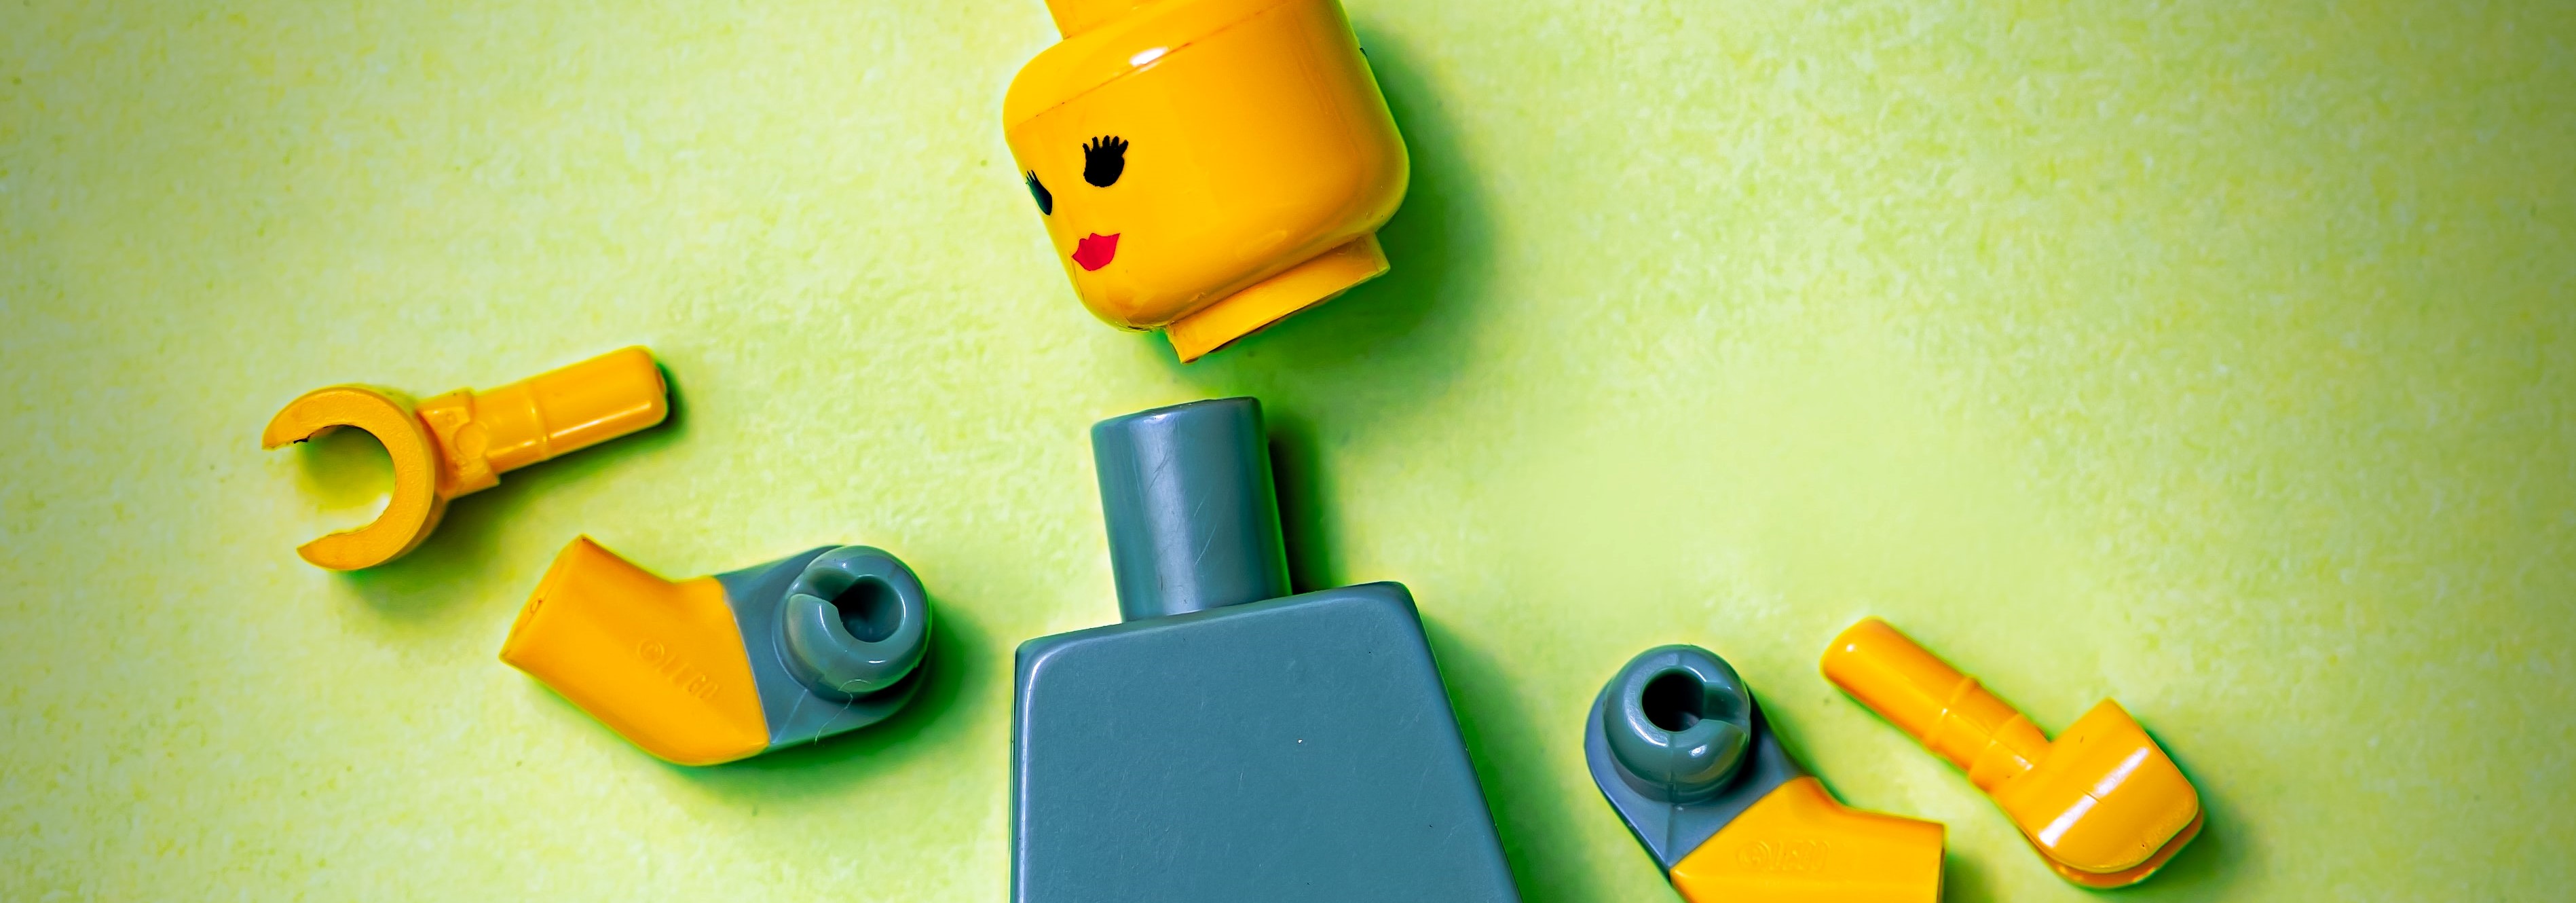 Das Bild zeigt ein in seine Einzelteile zerlegtes Lego-Männchen vor grünem Hintergrund.